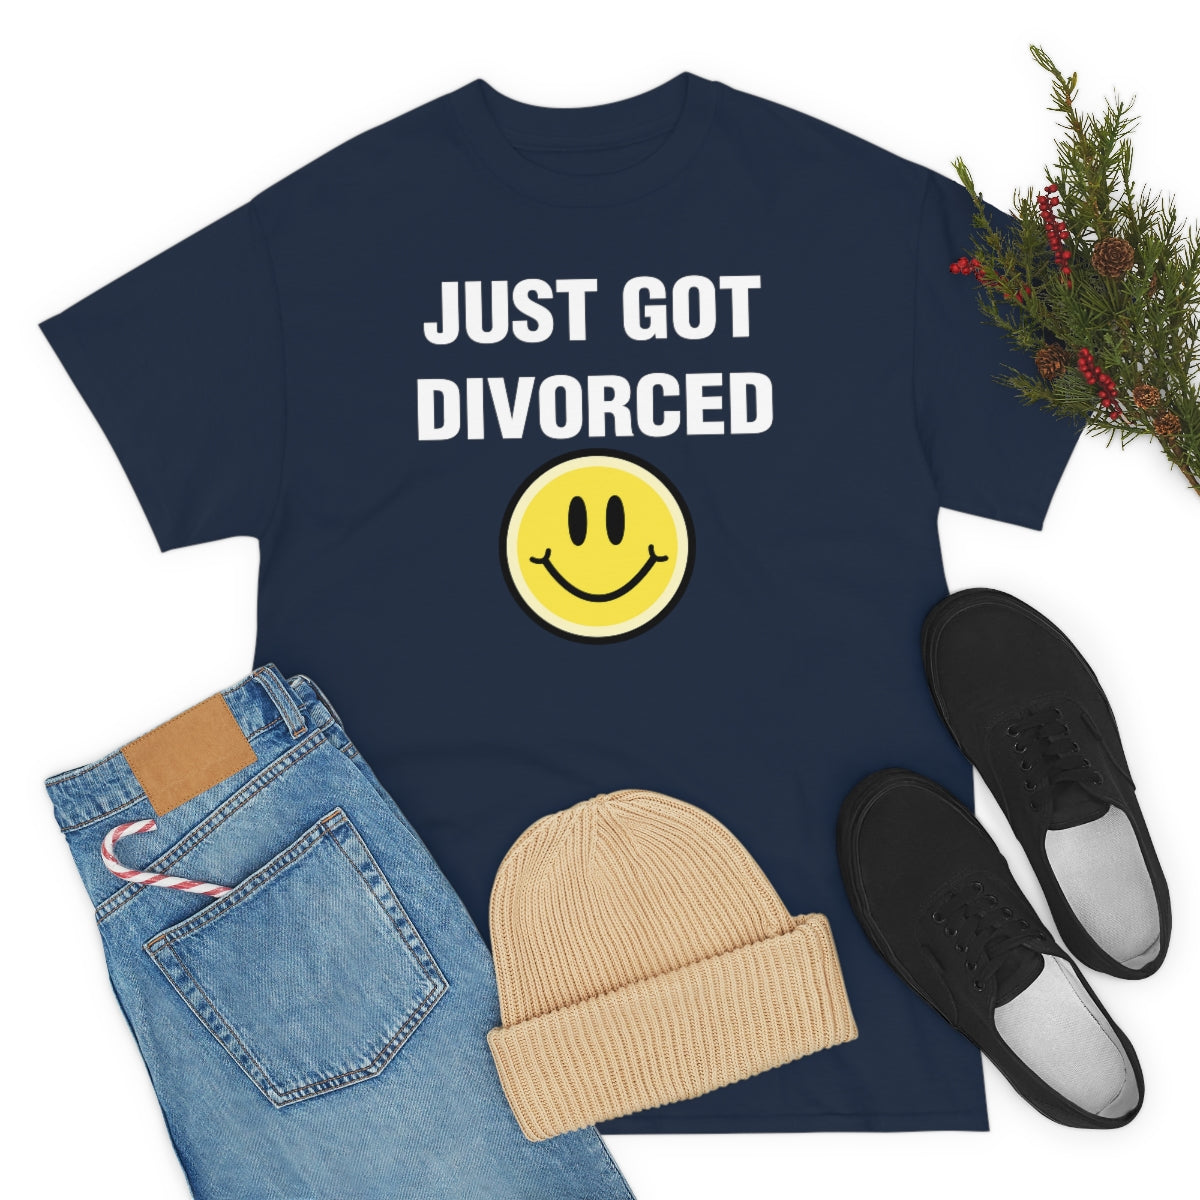 JUST GOT DIVORCED TEE